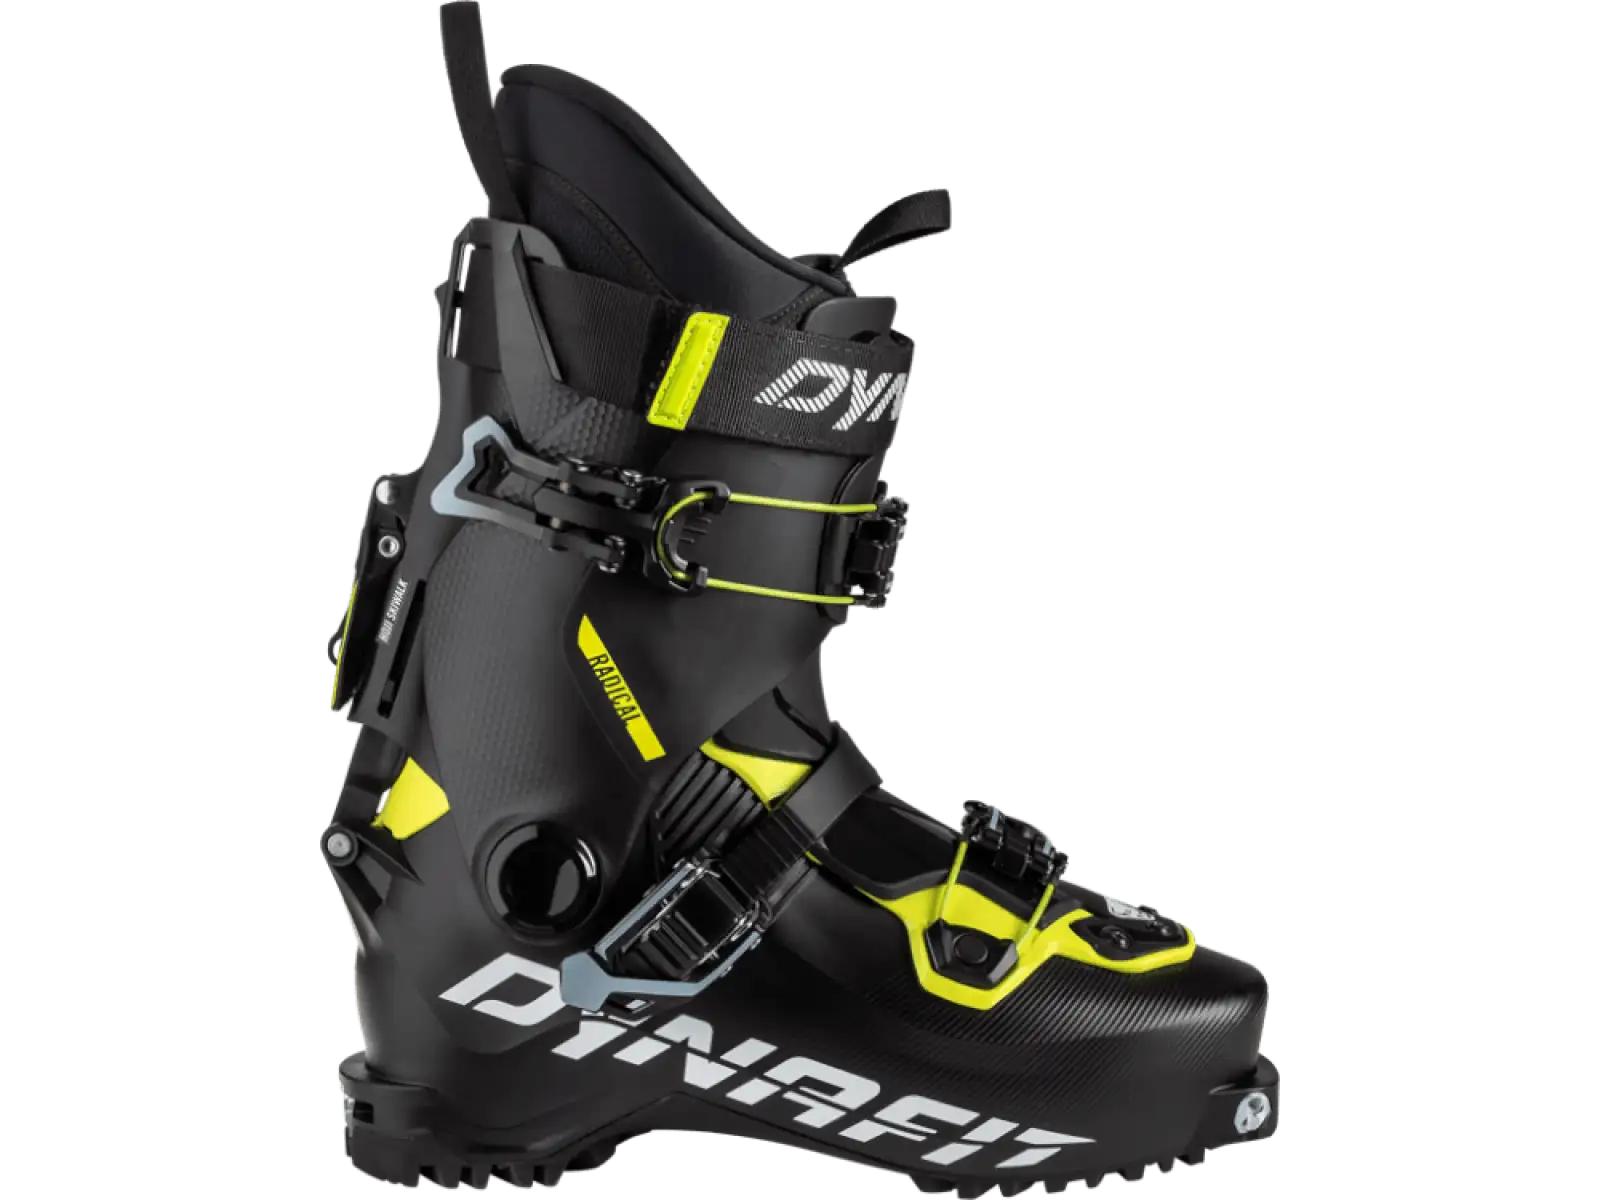 Dynafit Radical Ski Touring pánské lyžařské boty Black/Neon Yellow